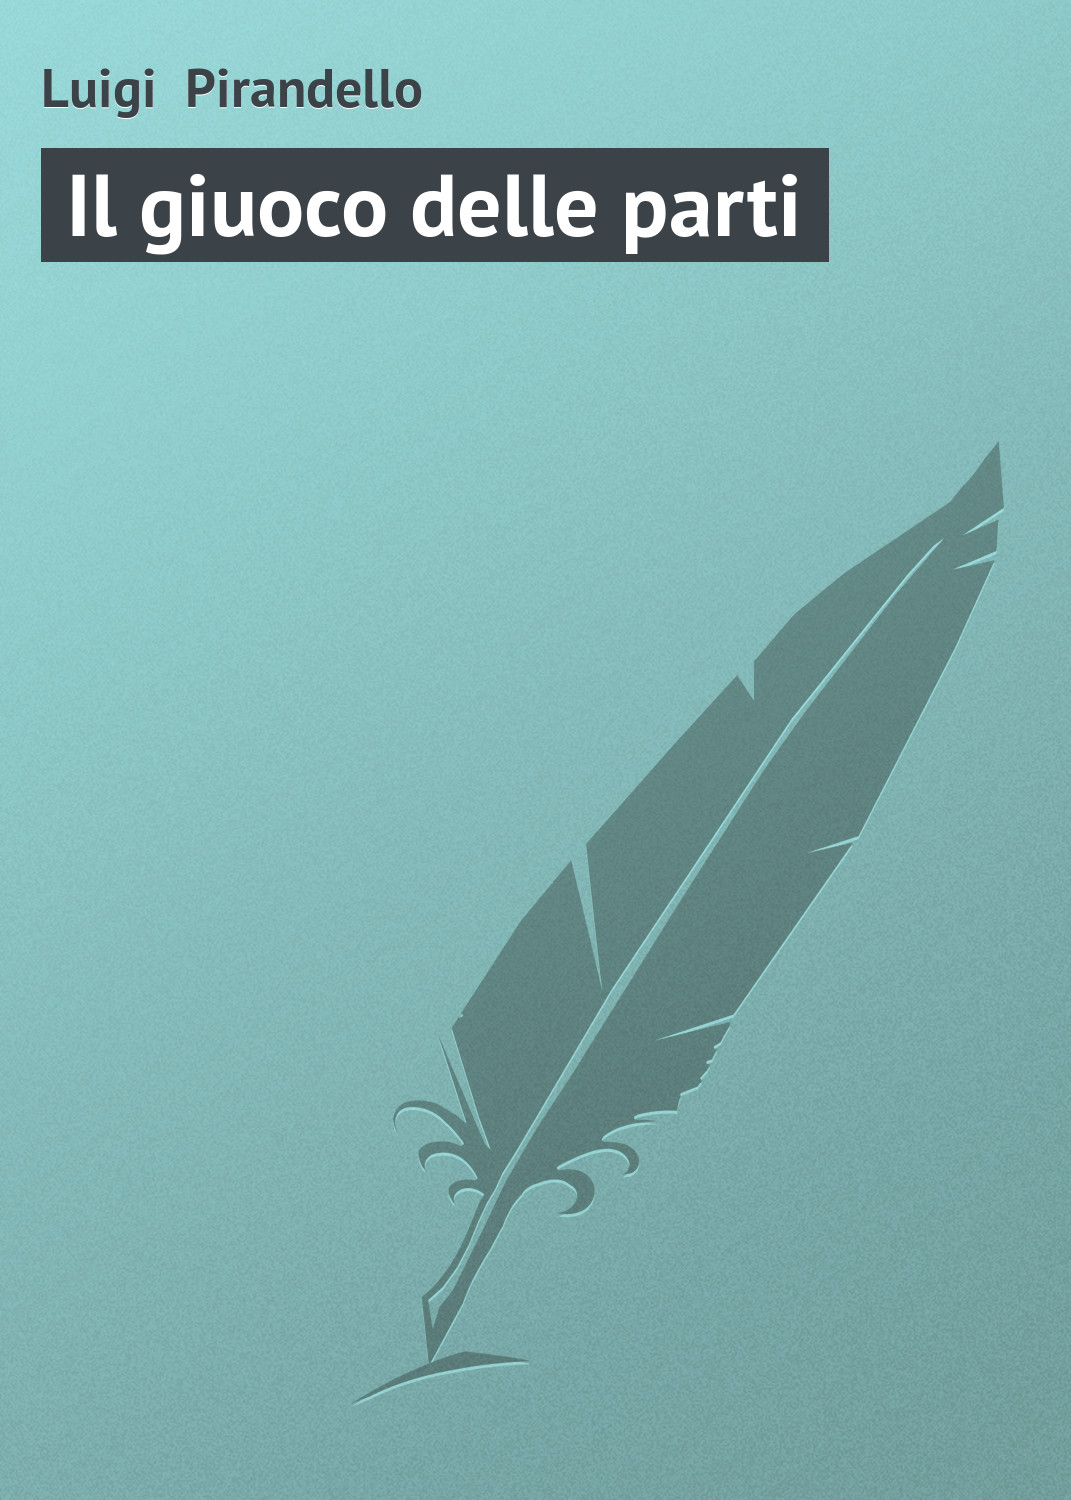 Книга Il giuoco delle parti из серии , созданная Luigi Pirandello, может относится к жанру Зарубежная старинная литература, Зарубежная классика. Стоимость электронной книги Il giuoco delle parti с идентификатором 21103766 составляет 5.99 руб.